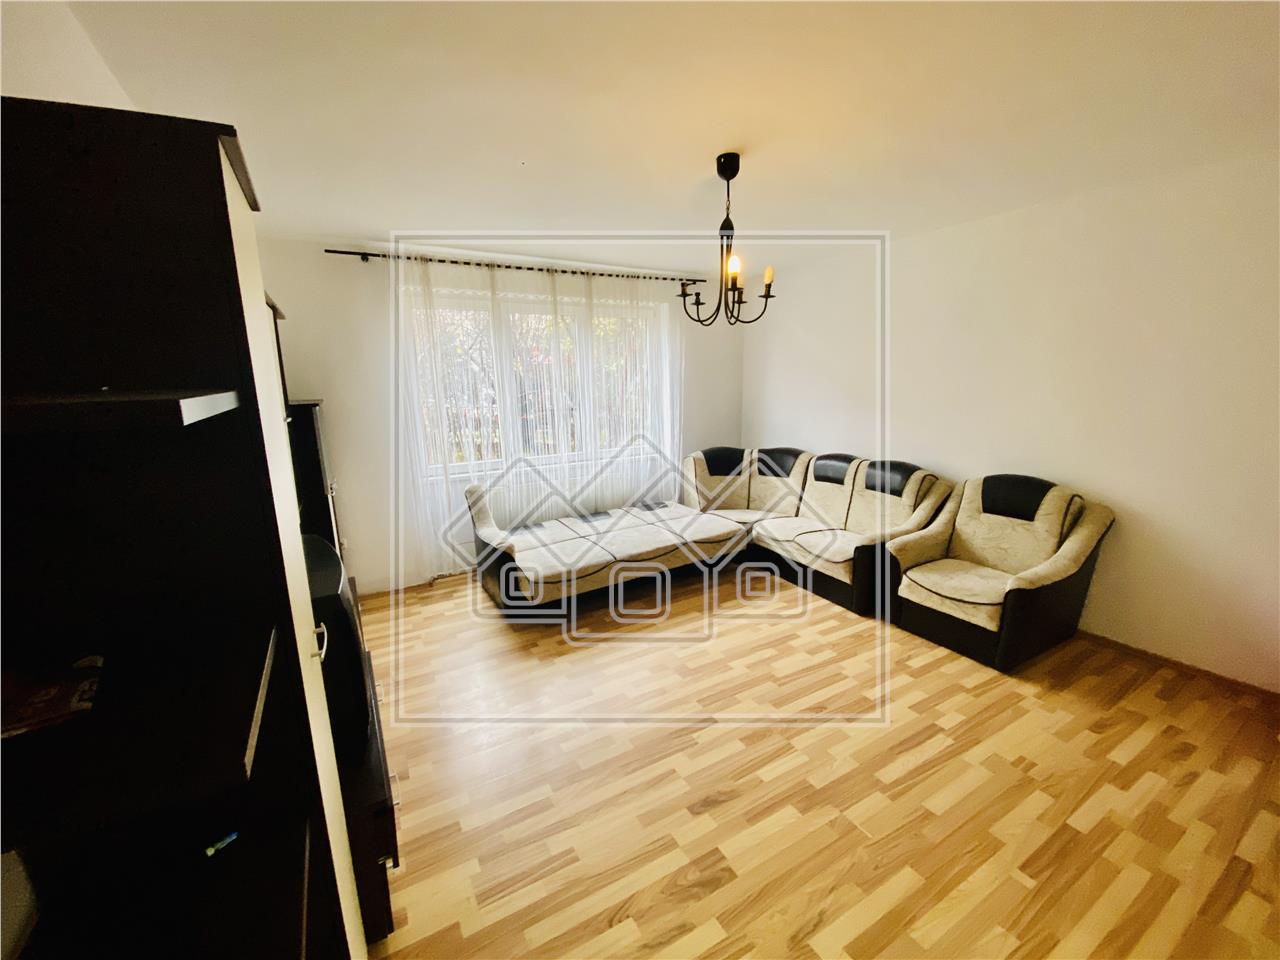 Wohnung zum Verkauf in Sibiu - 3 Zimmer, Keller und Garage - Vasile Aa